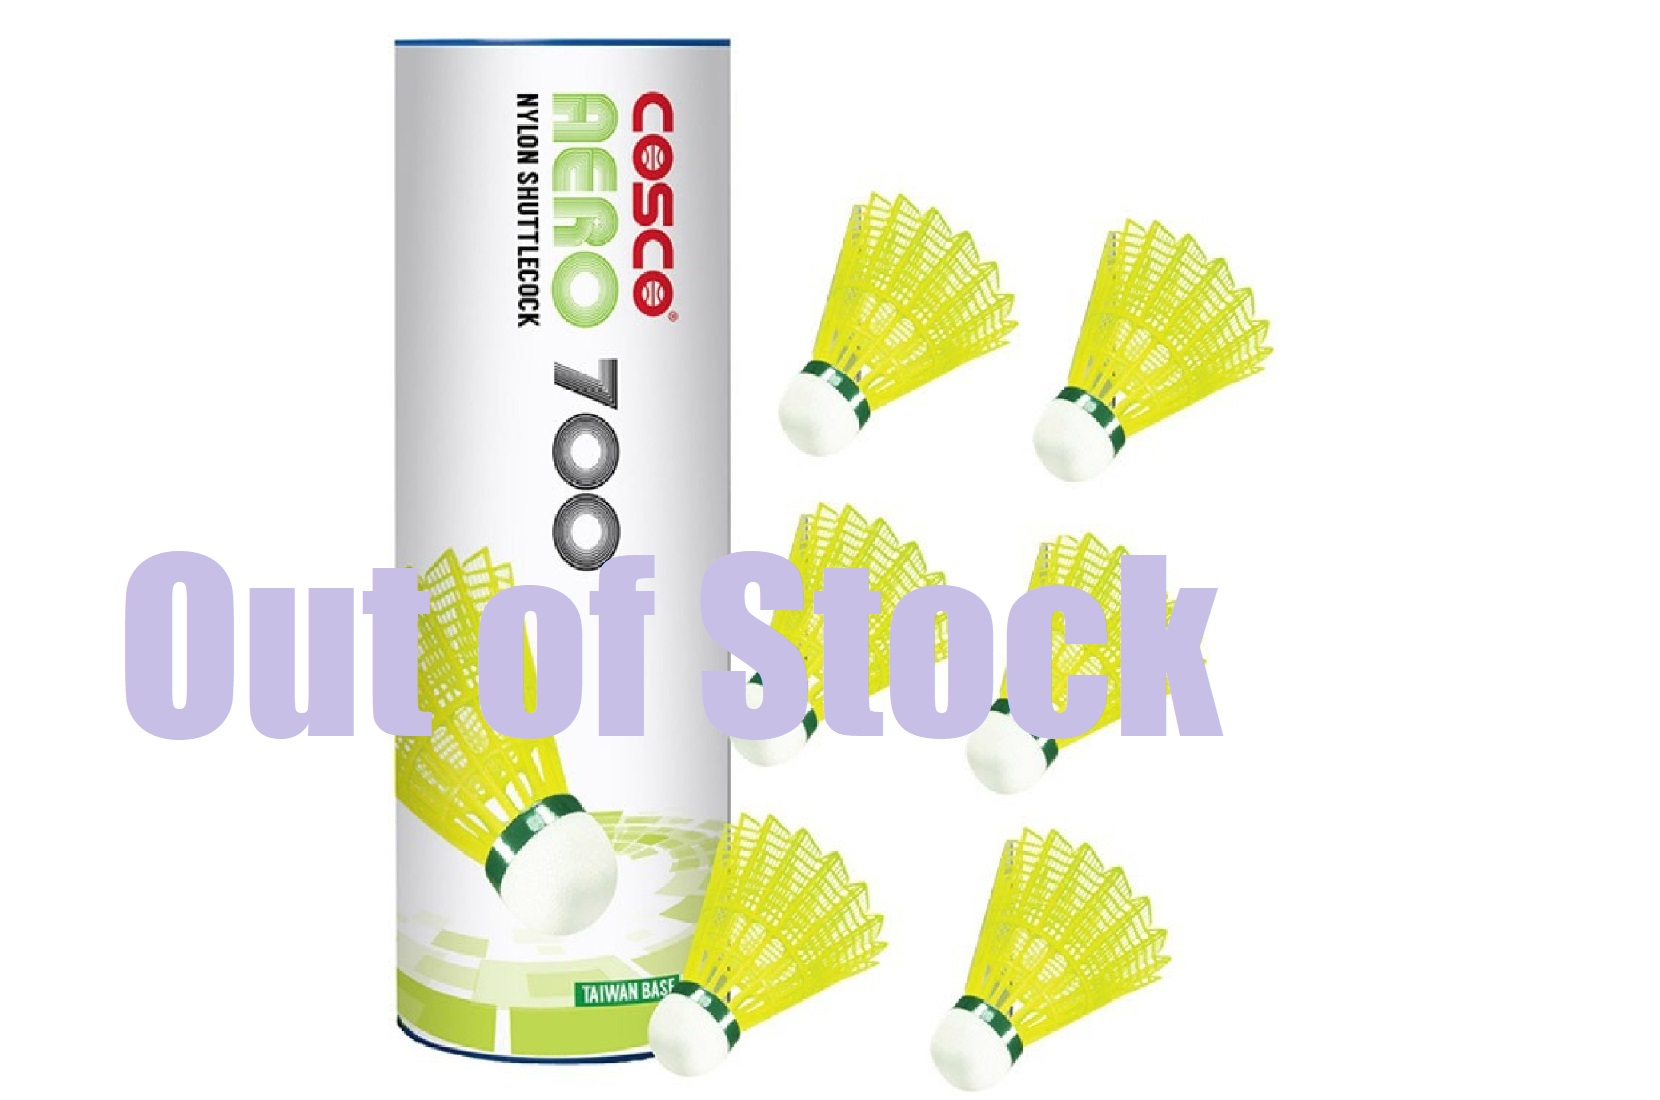 Cosco Badminton Shuttlecock Price Ireland, SAVE 35%